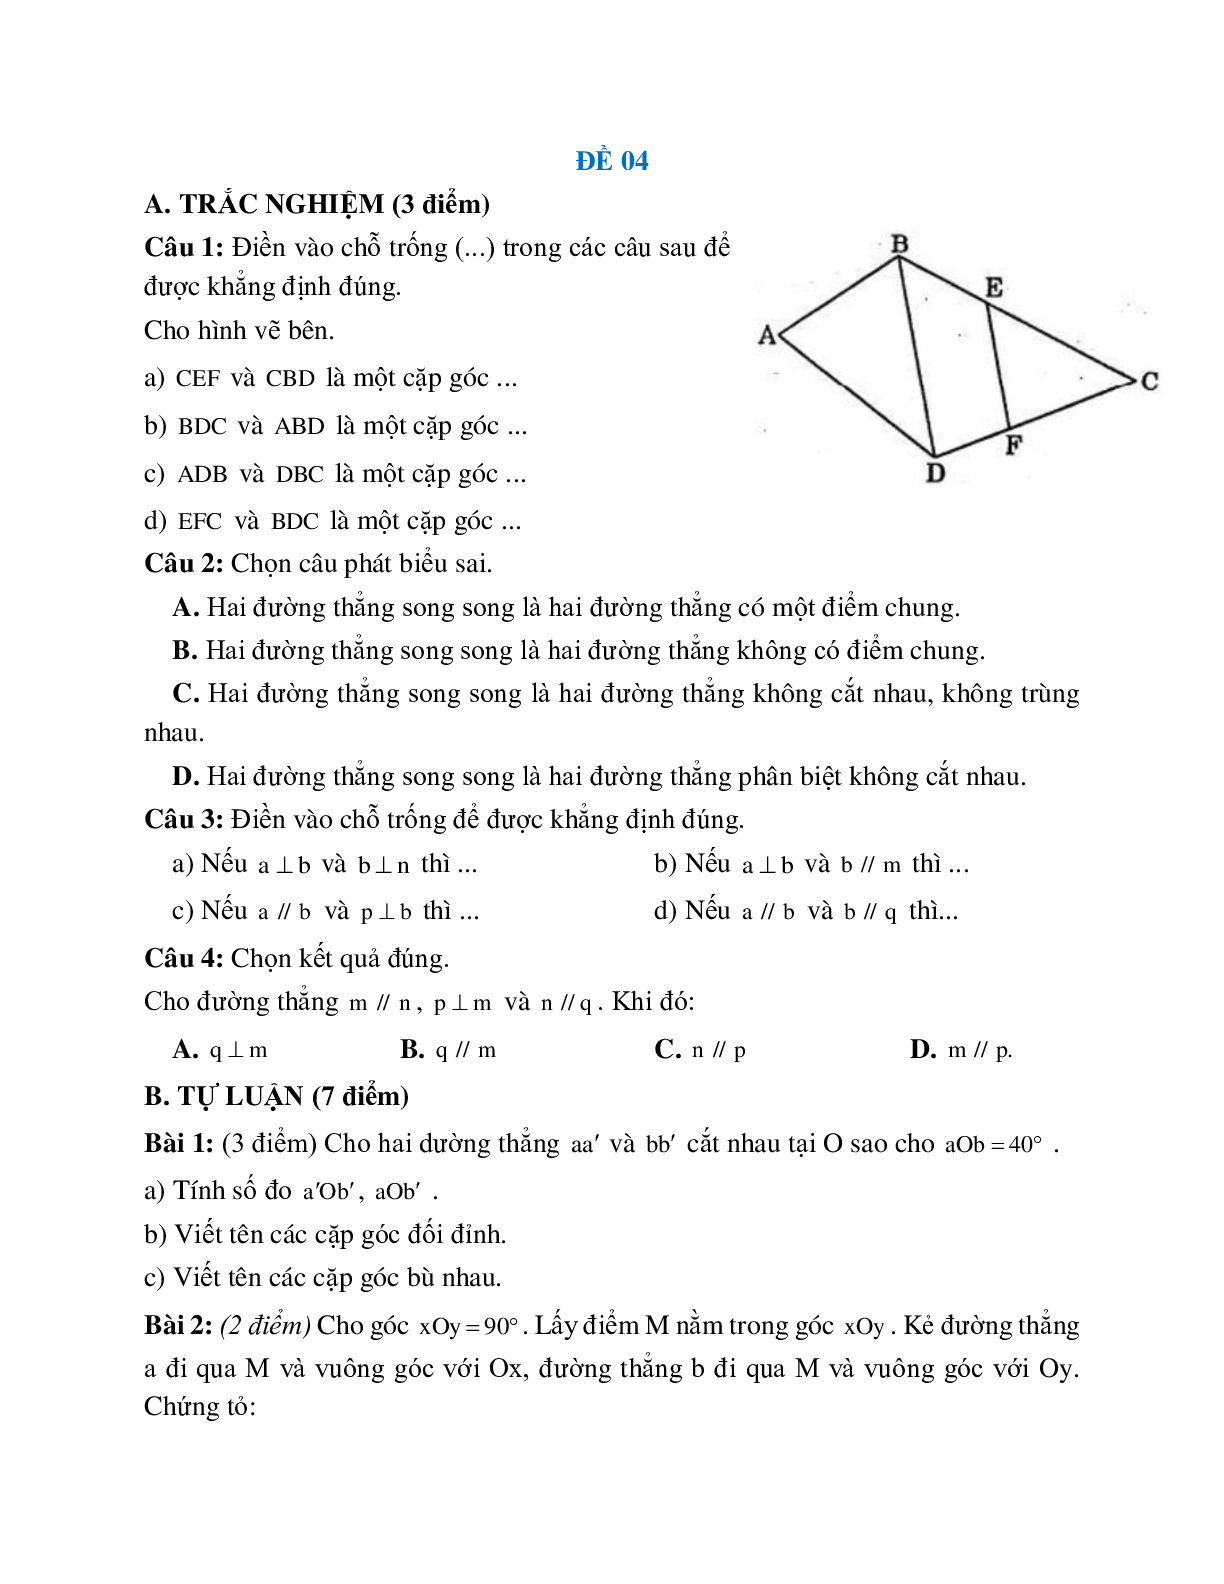 Đề ôn tập đường thẳng vuông góc, đường thẳng song song (5 đề) (trang 5)